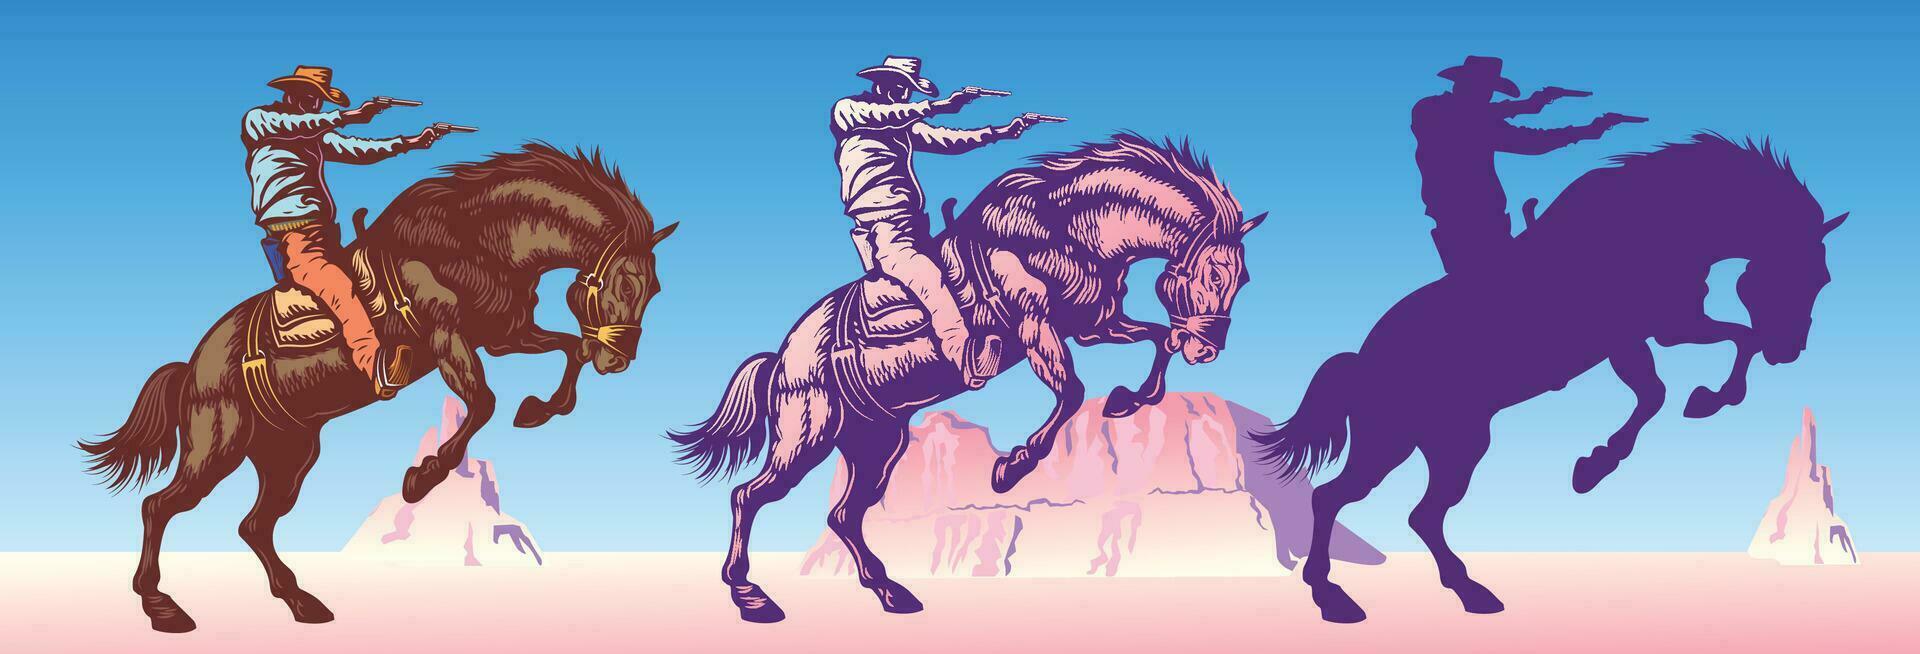 cowboy riding a wild horse mustang rounding a kicking horse vector